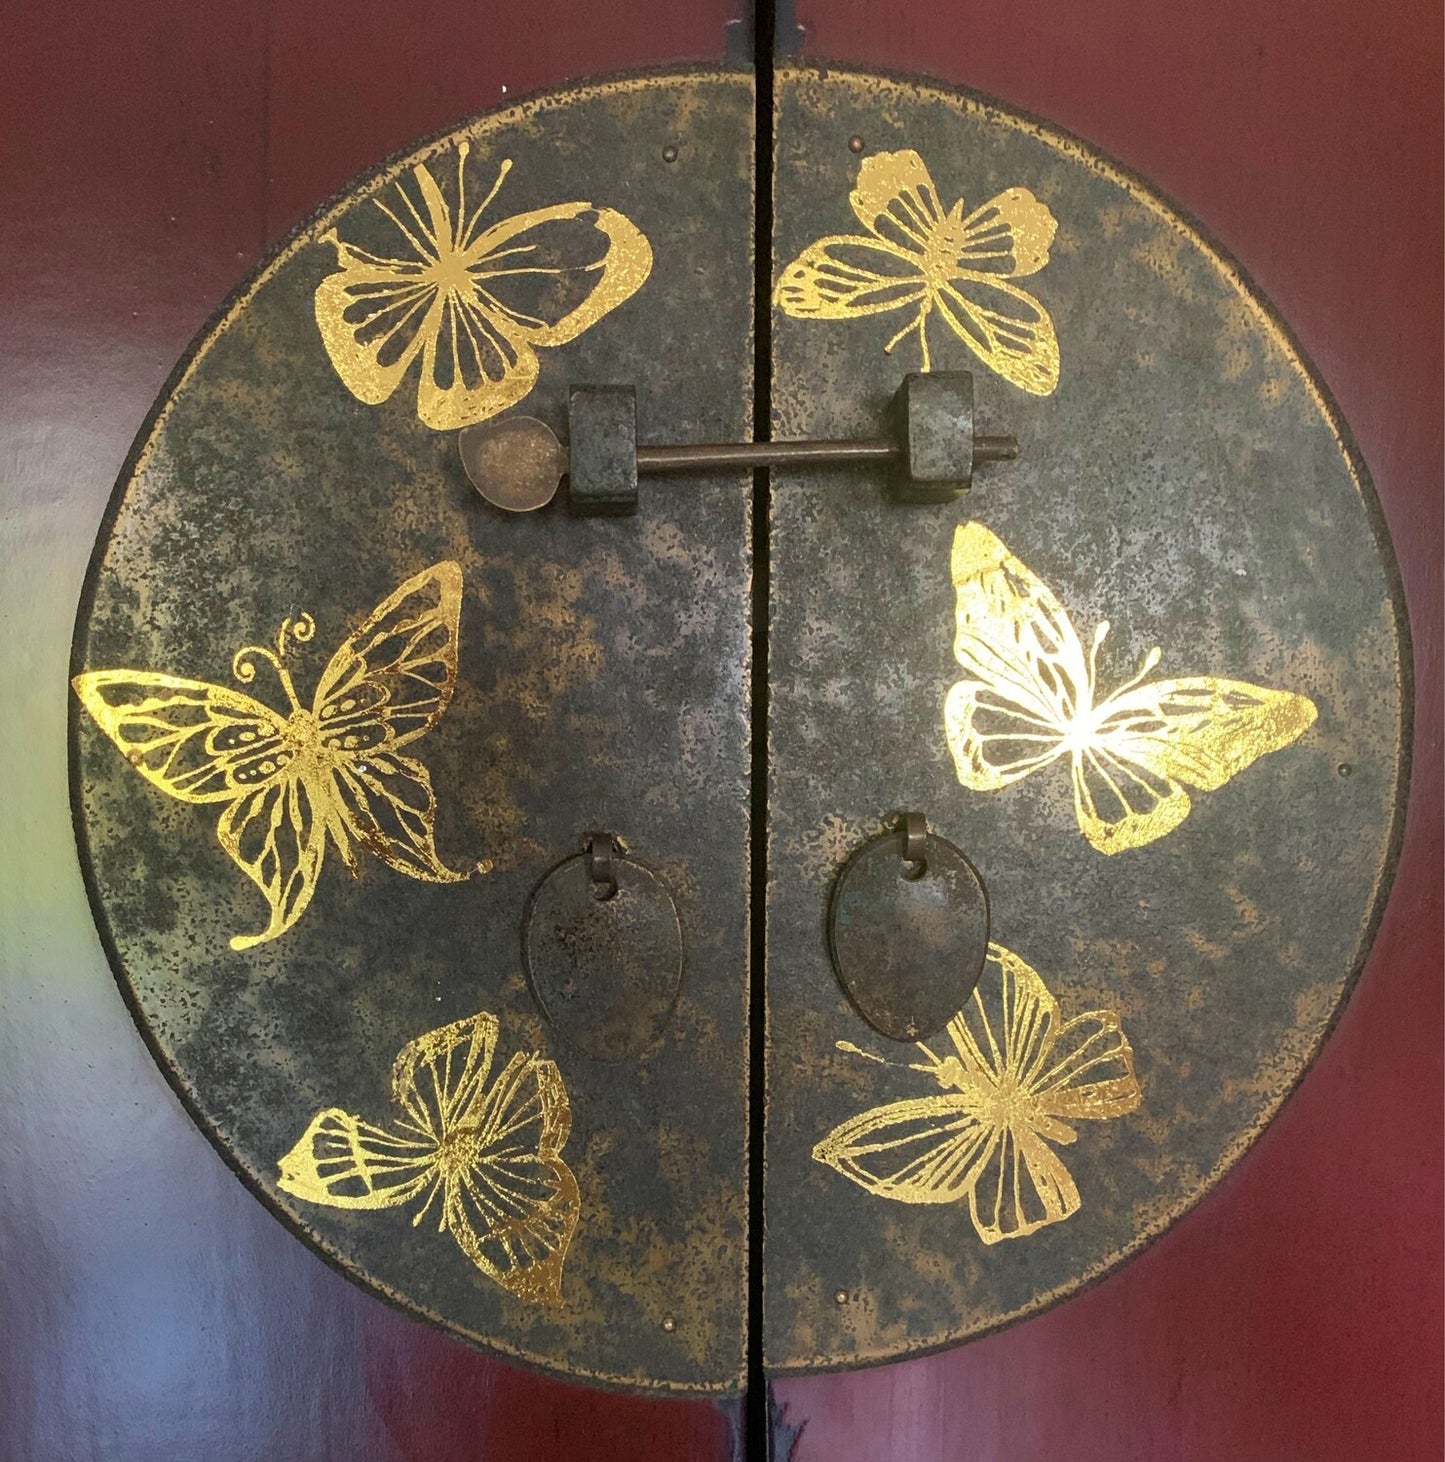 Hokus Pokus - Metallic Gold Foil Accent Butterflies 23x31cm (9x12")